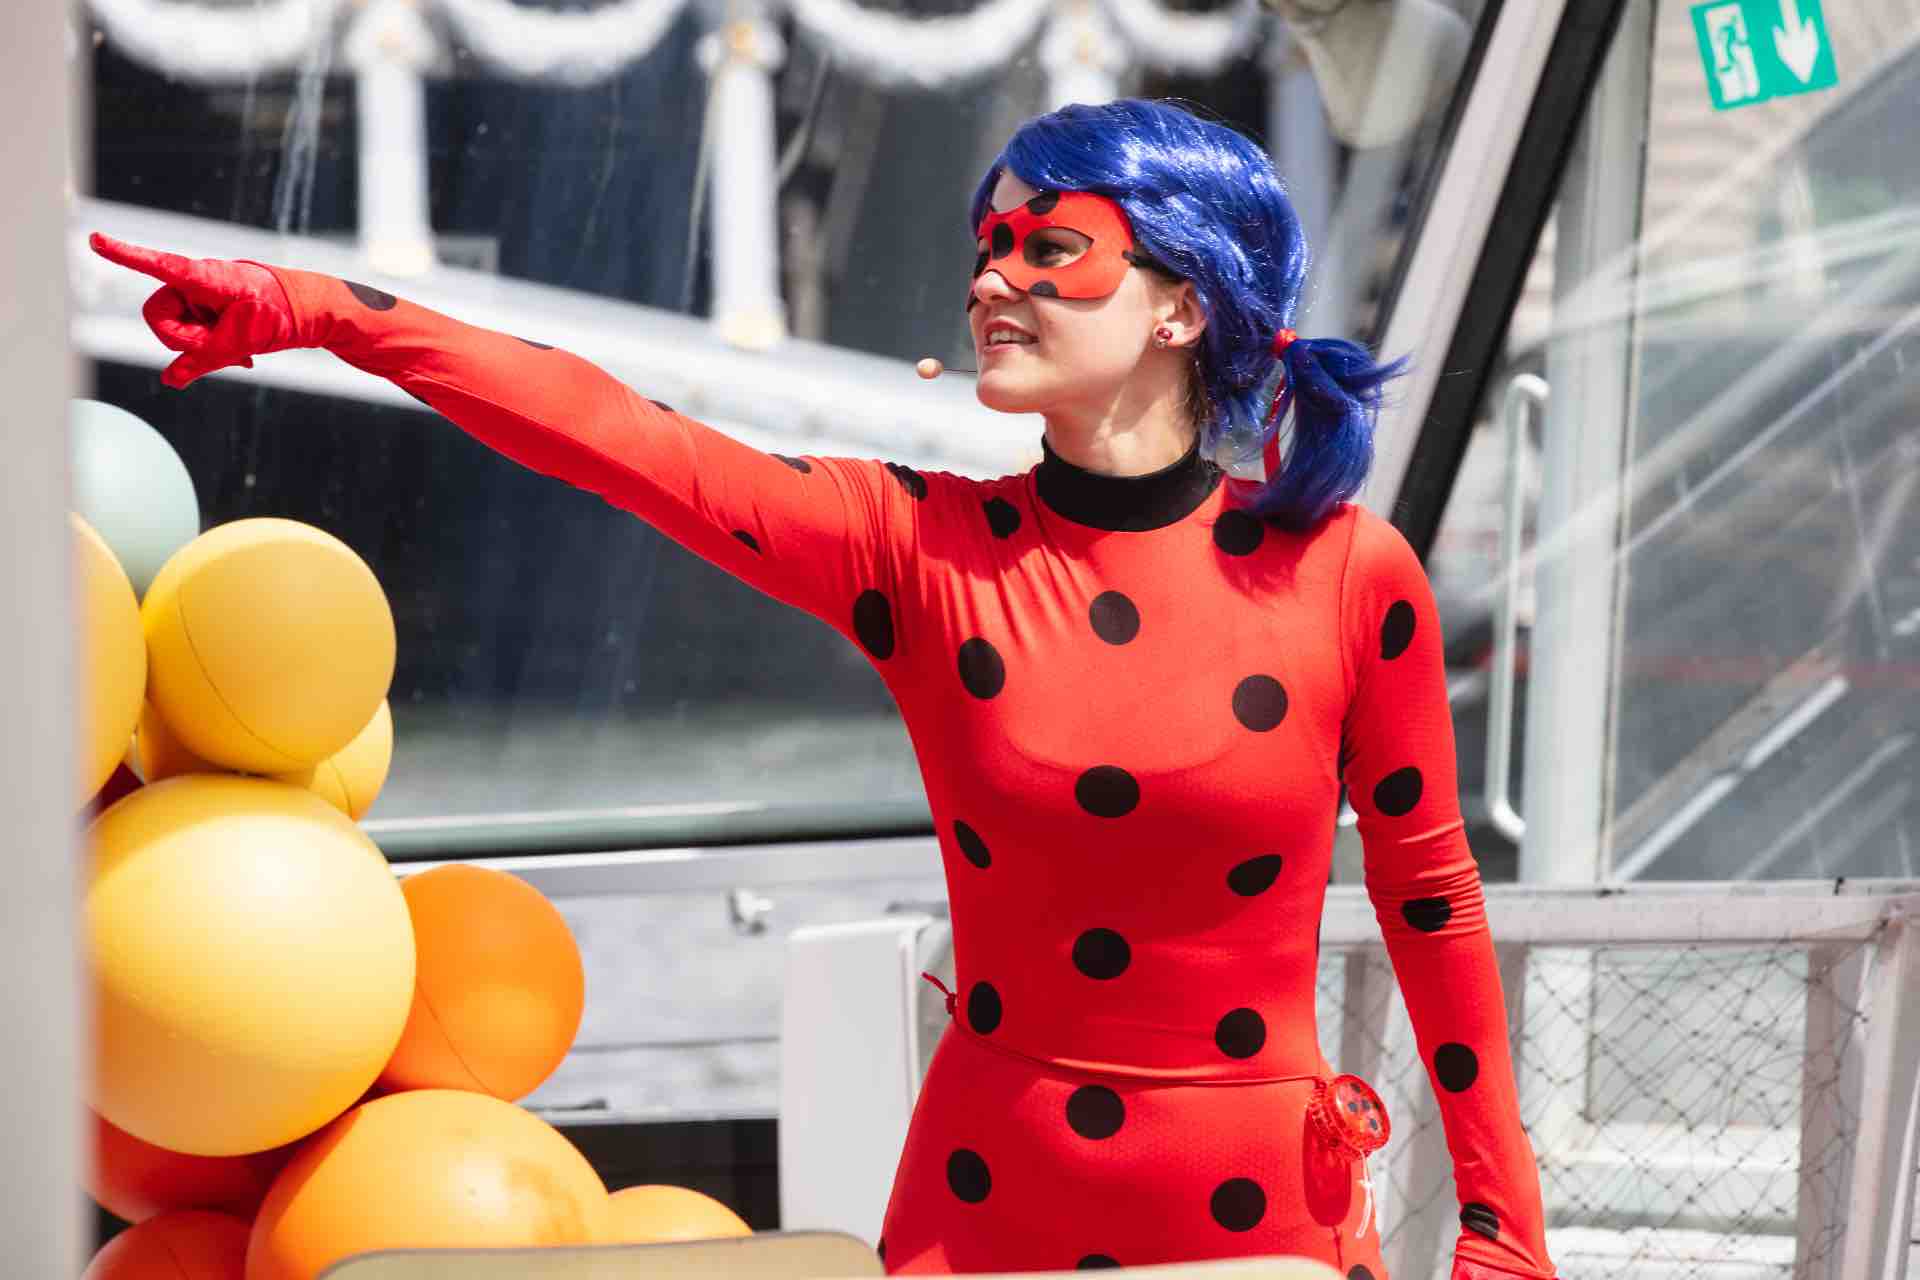 Miraculous Ladybug Joyeux anniversaire toile de fond Cote dIvoire